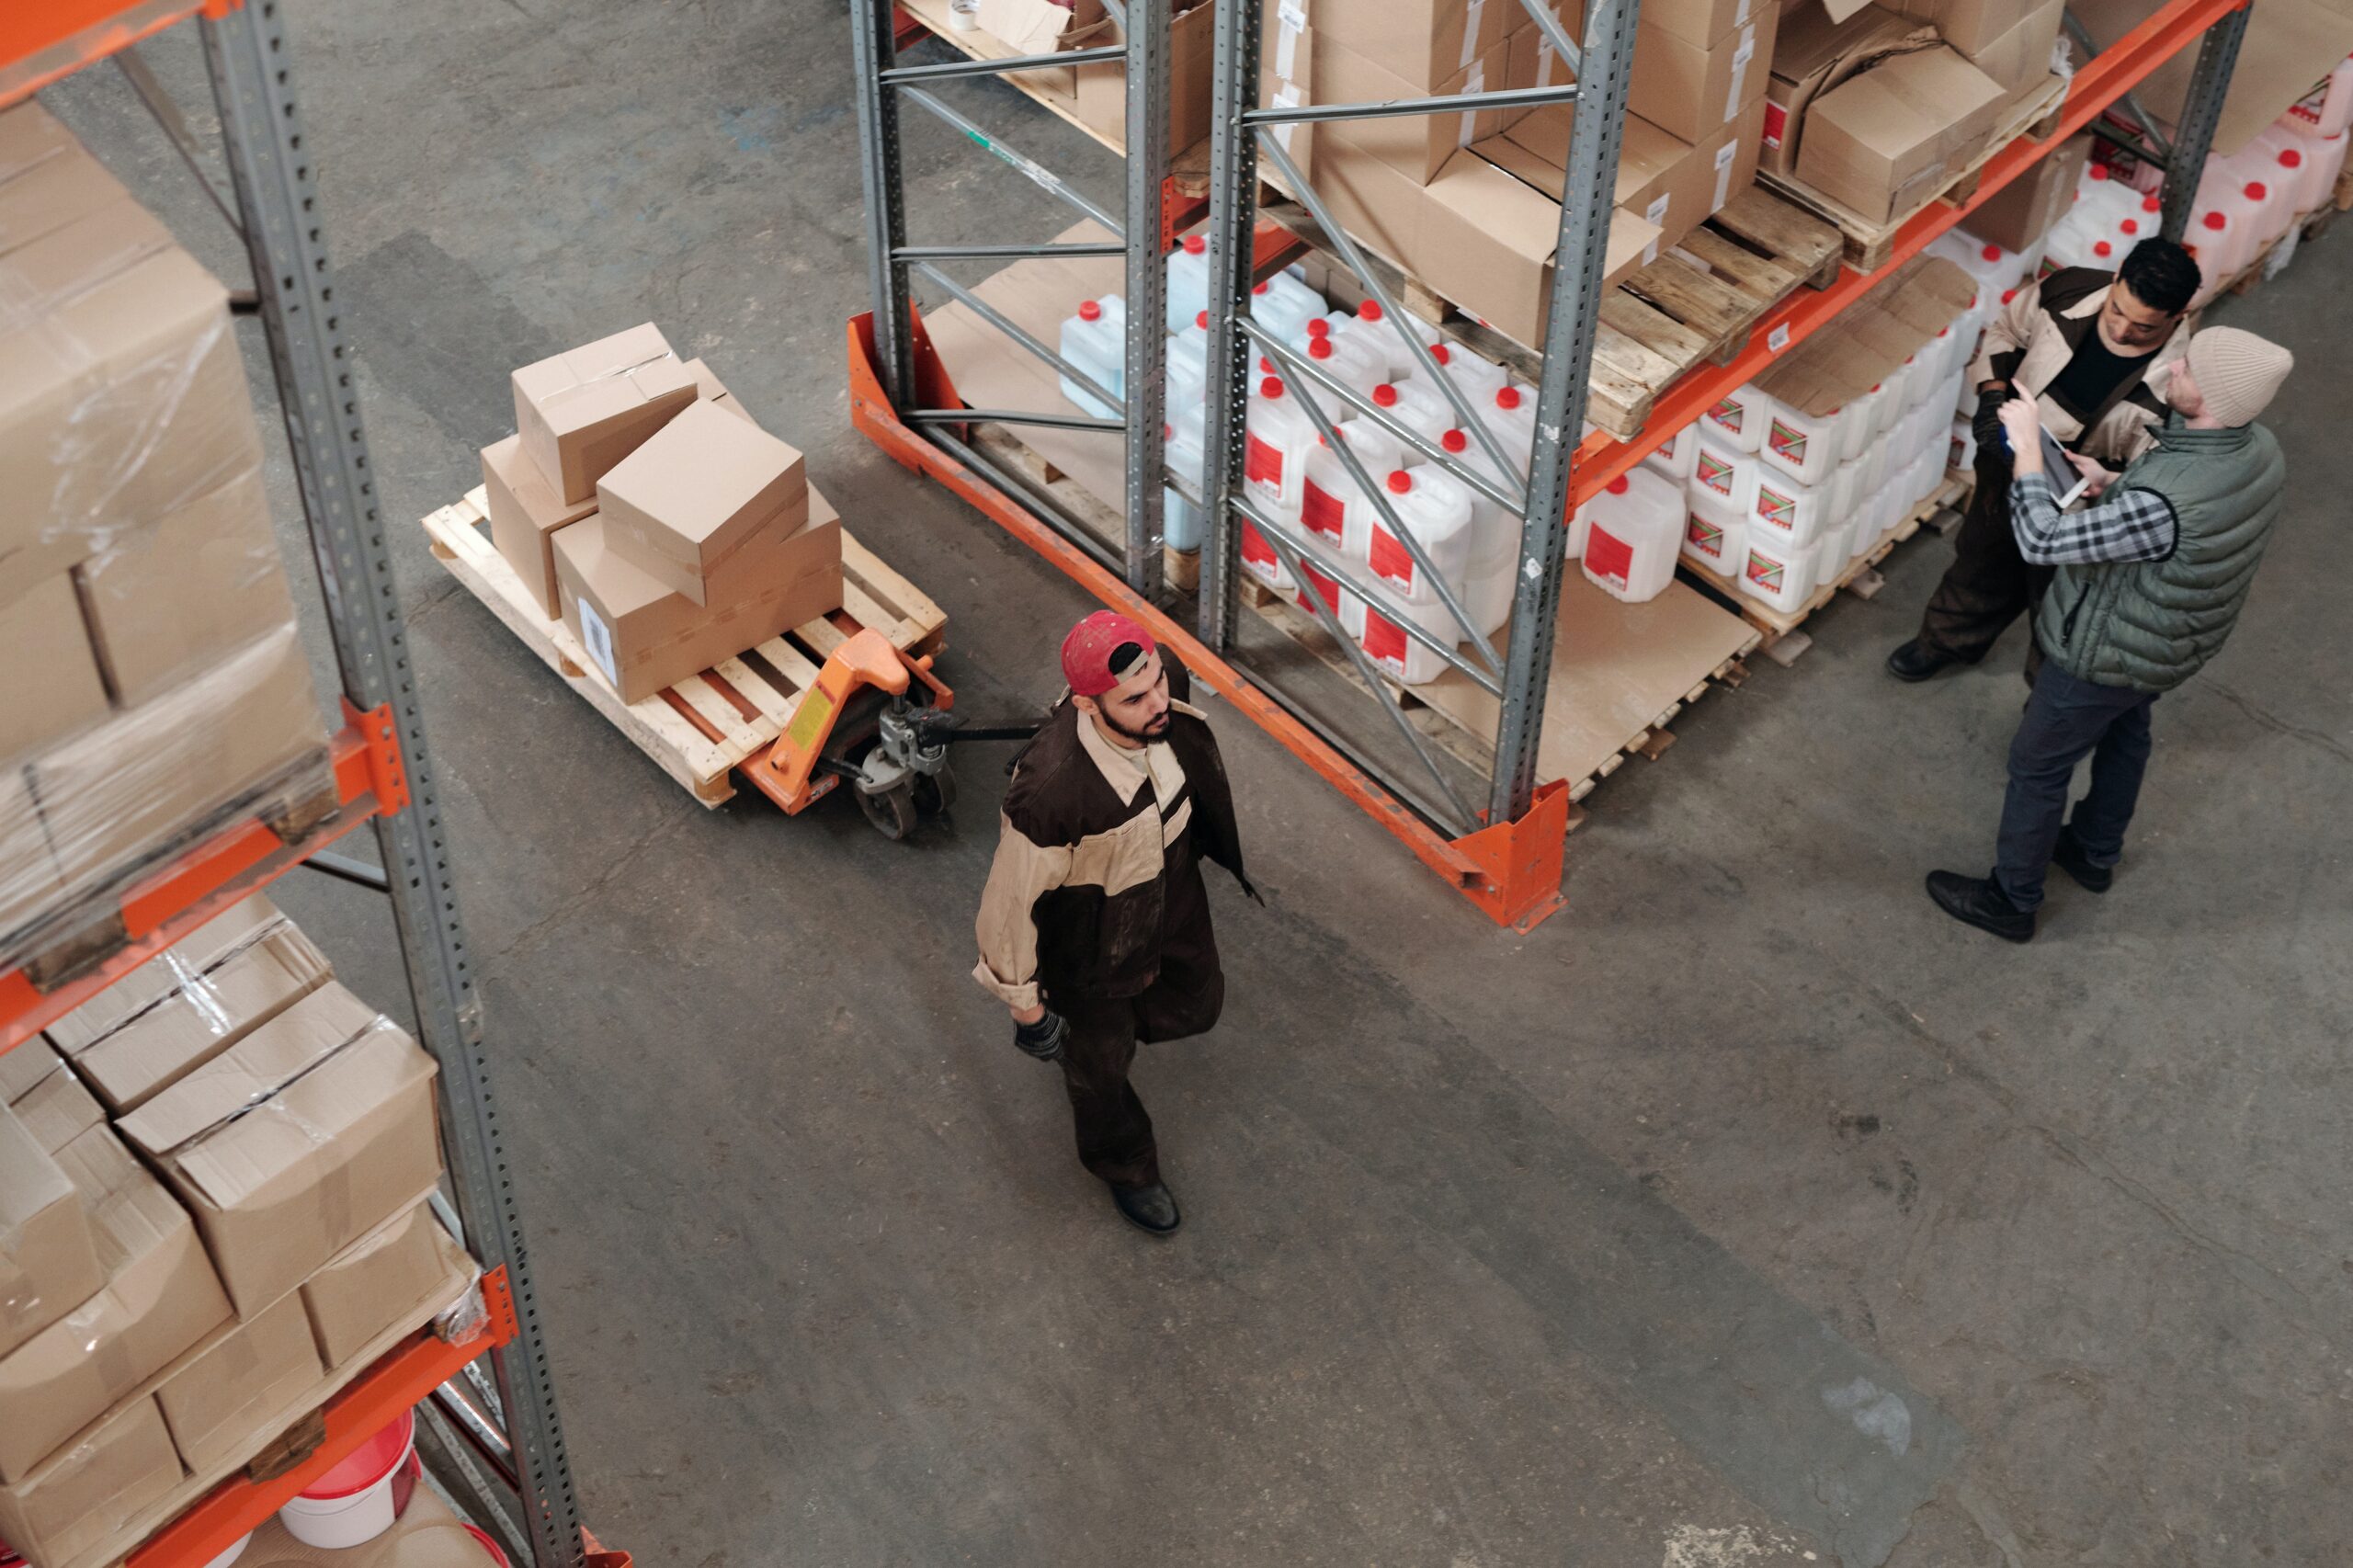 Vendita di Agenzie per il Lavoro nella logistica e nel facility management - Hume Capital